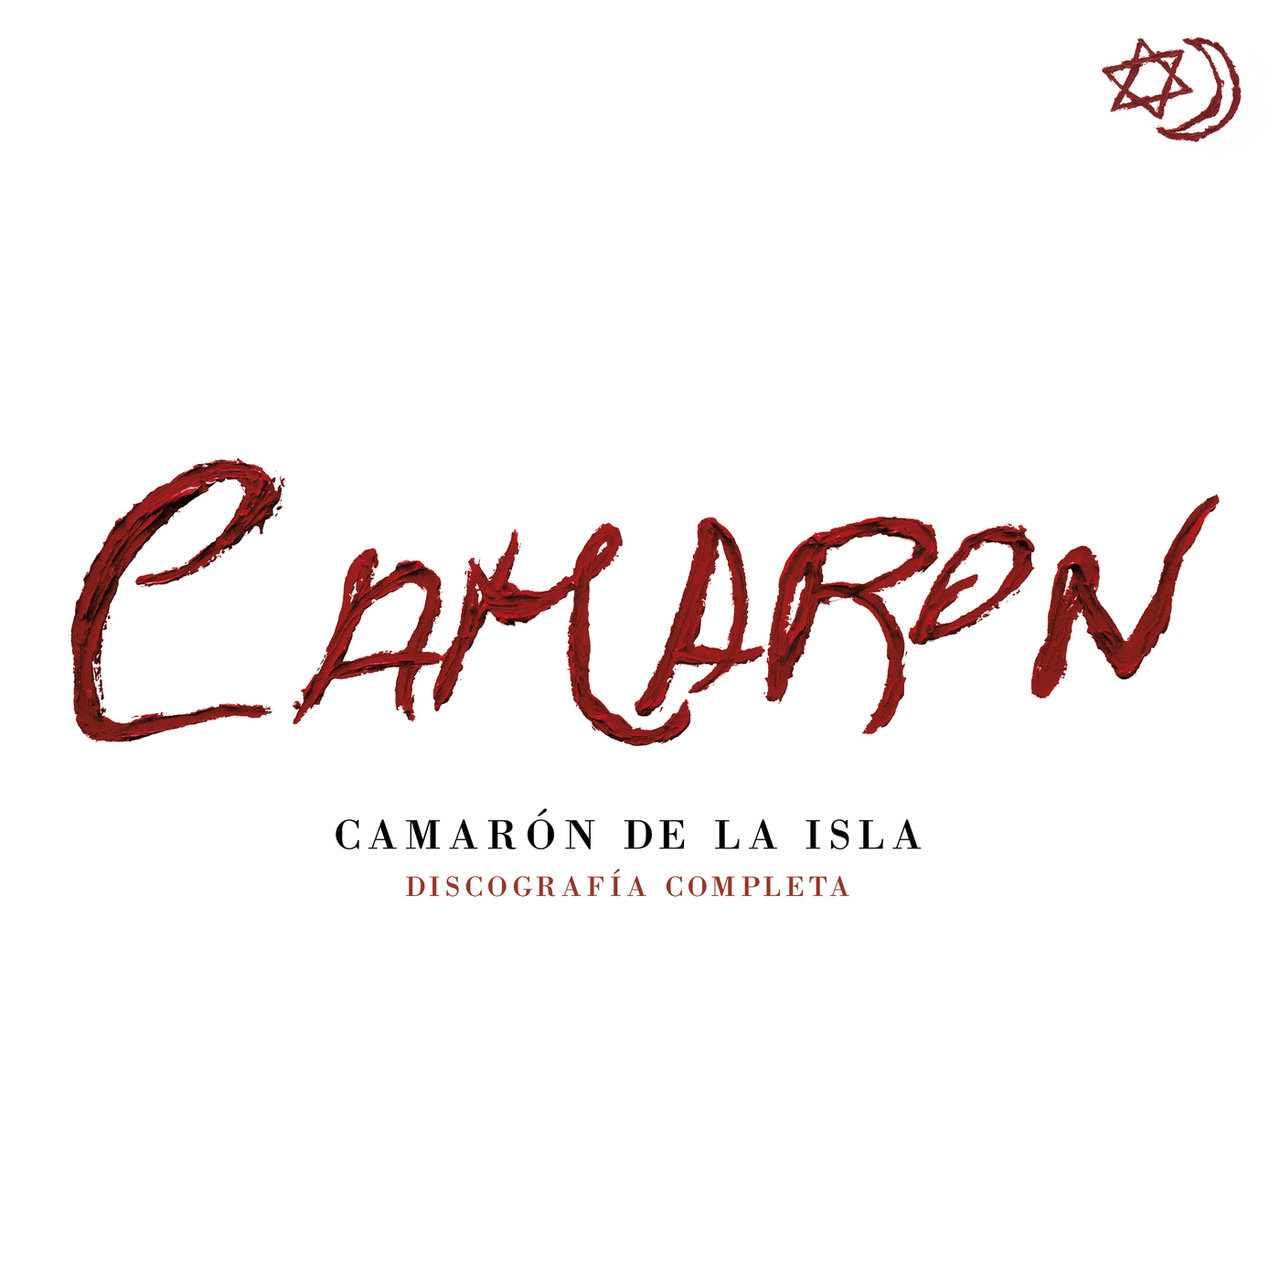 Camarón de la Isla - Discografía Completa [Remastered] (2018) 20 cd,s